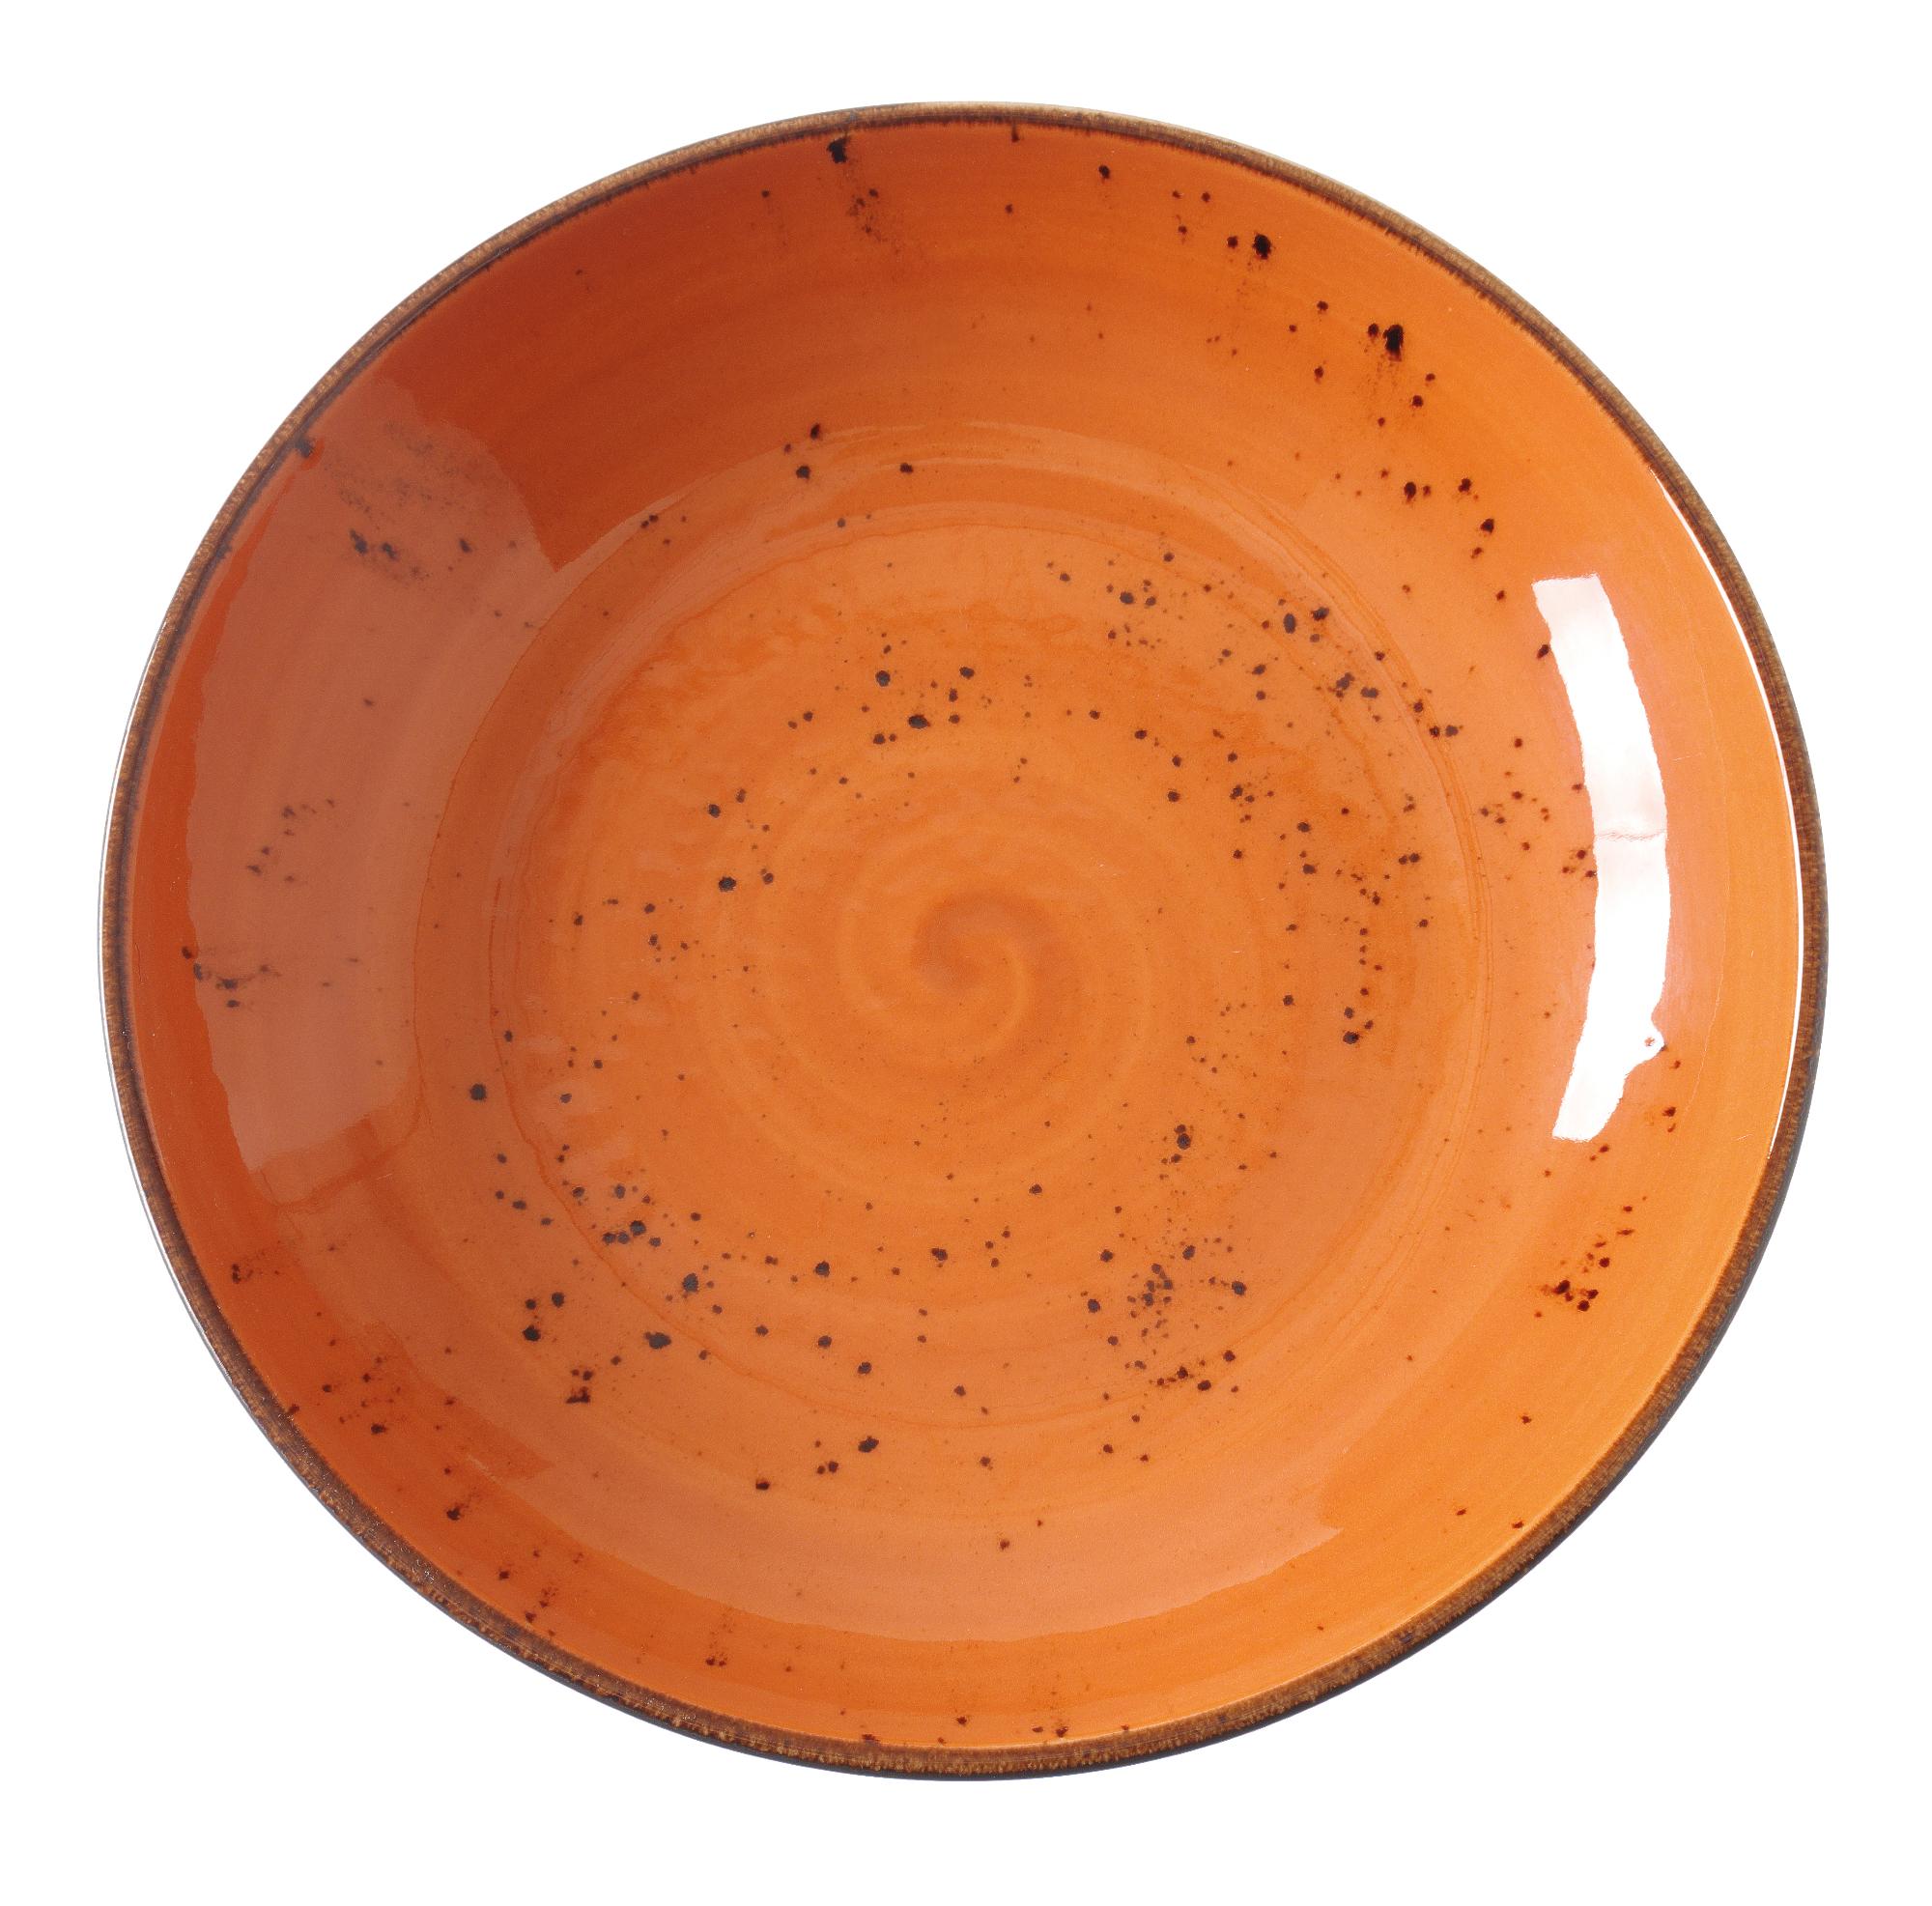 Dahlia coupe bowl, 250mm